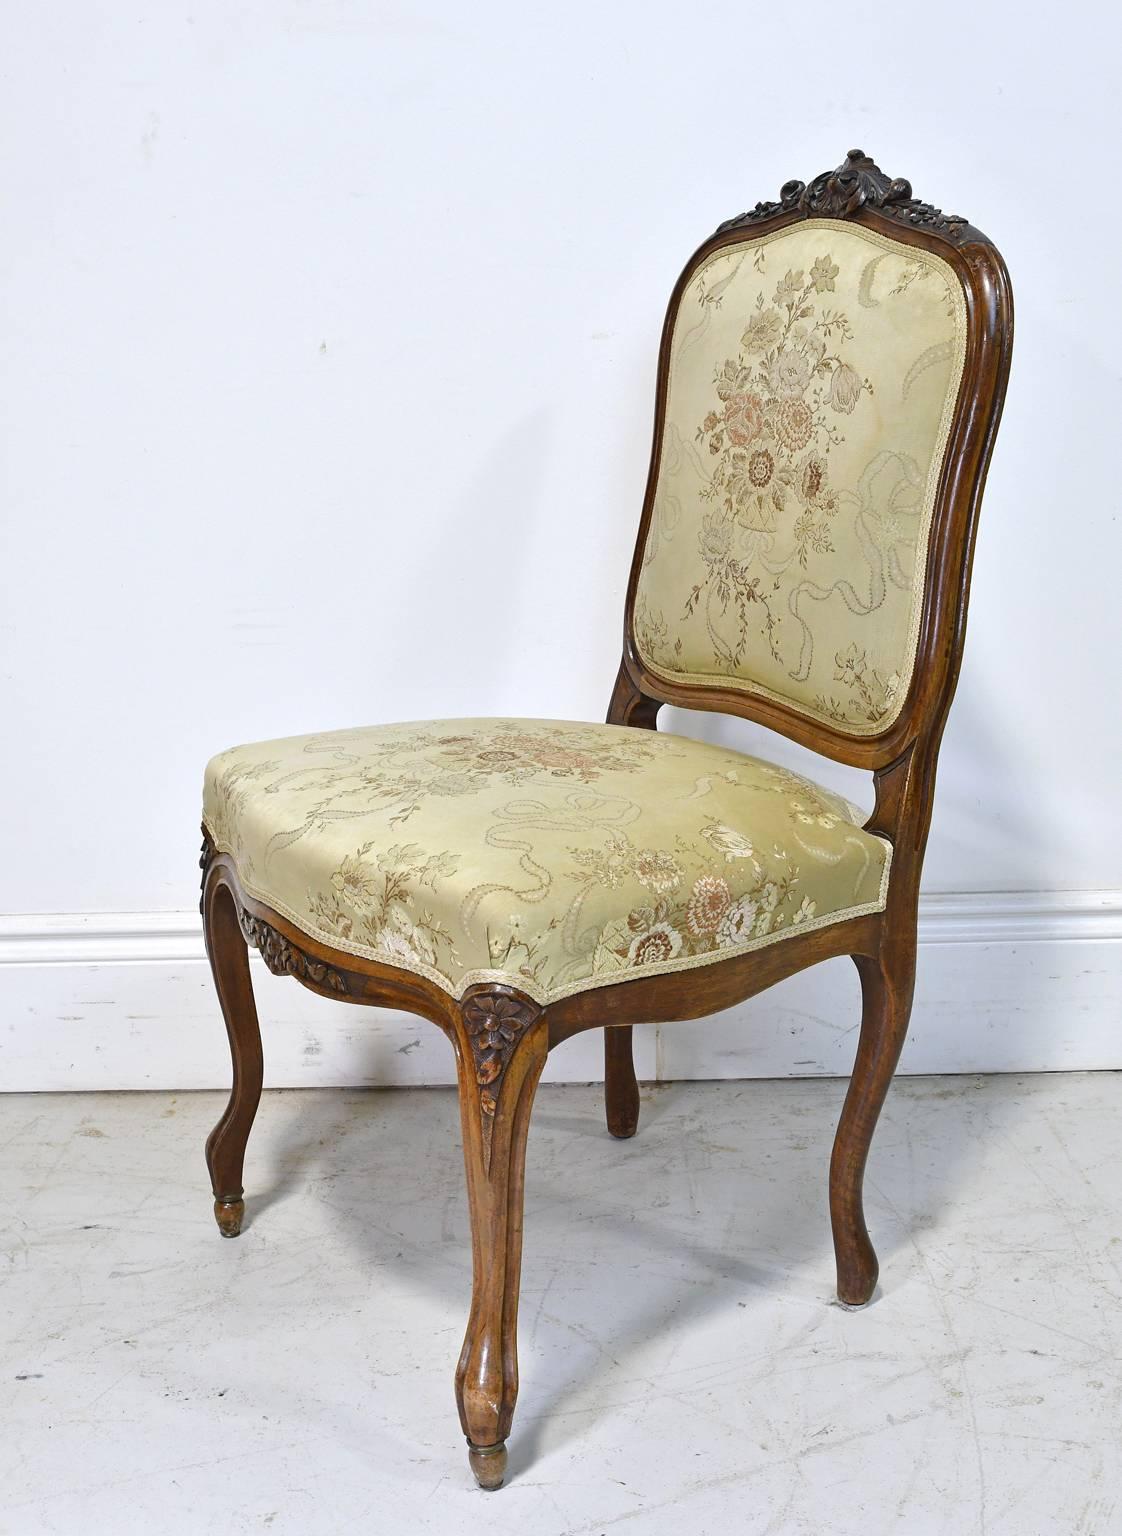 Une très belle chaise de style Louis XV avec une structure en noyer et un siège et un dossier rembourrés. Il présente des sculptures de festons et de feuillages le long de la crête arrière, des fleurs sculptées le long du tablier et sur les genoux